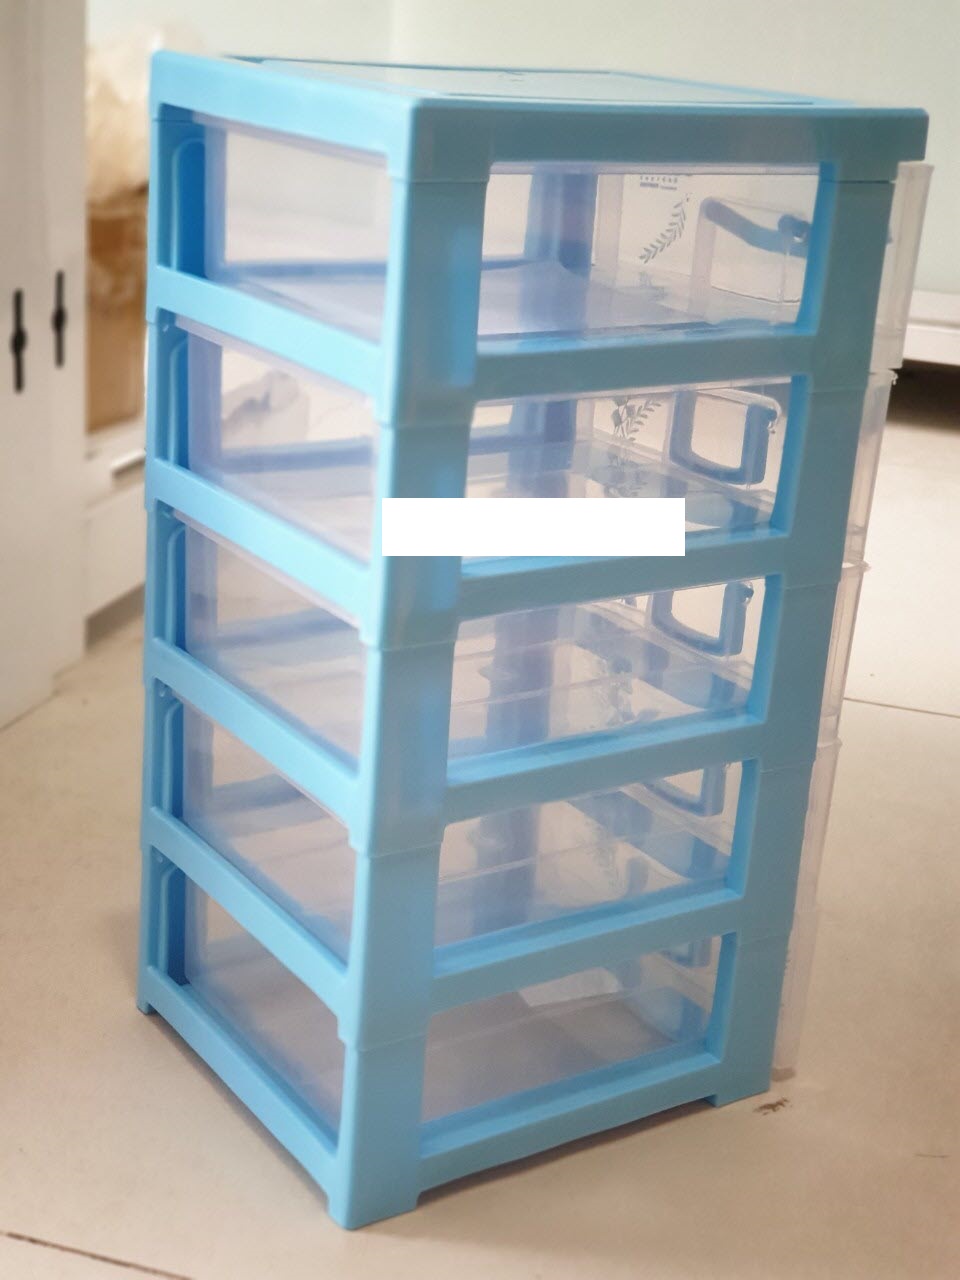 Tủ đựng linh kiện điện tử 5 ngăn 35x18x16cm - xanh ngọc